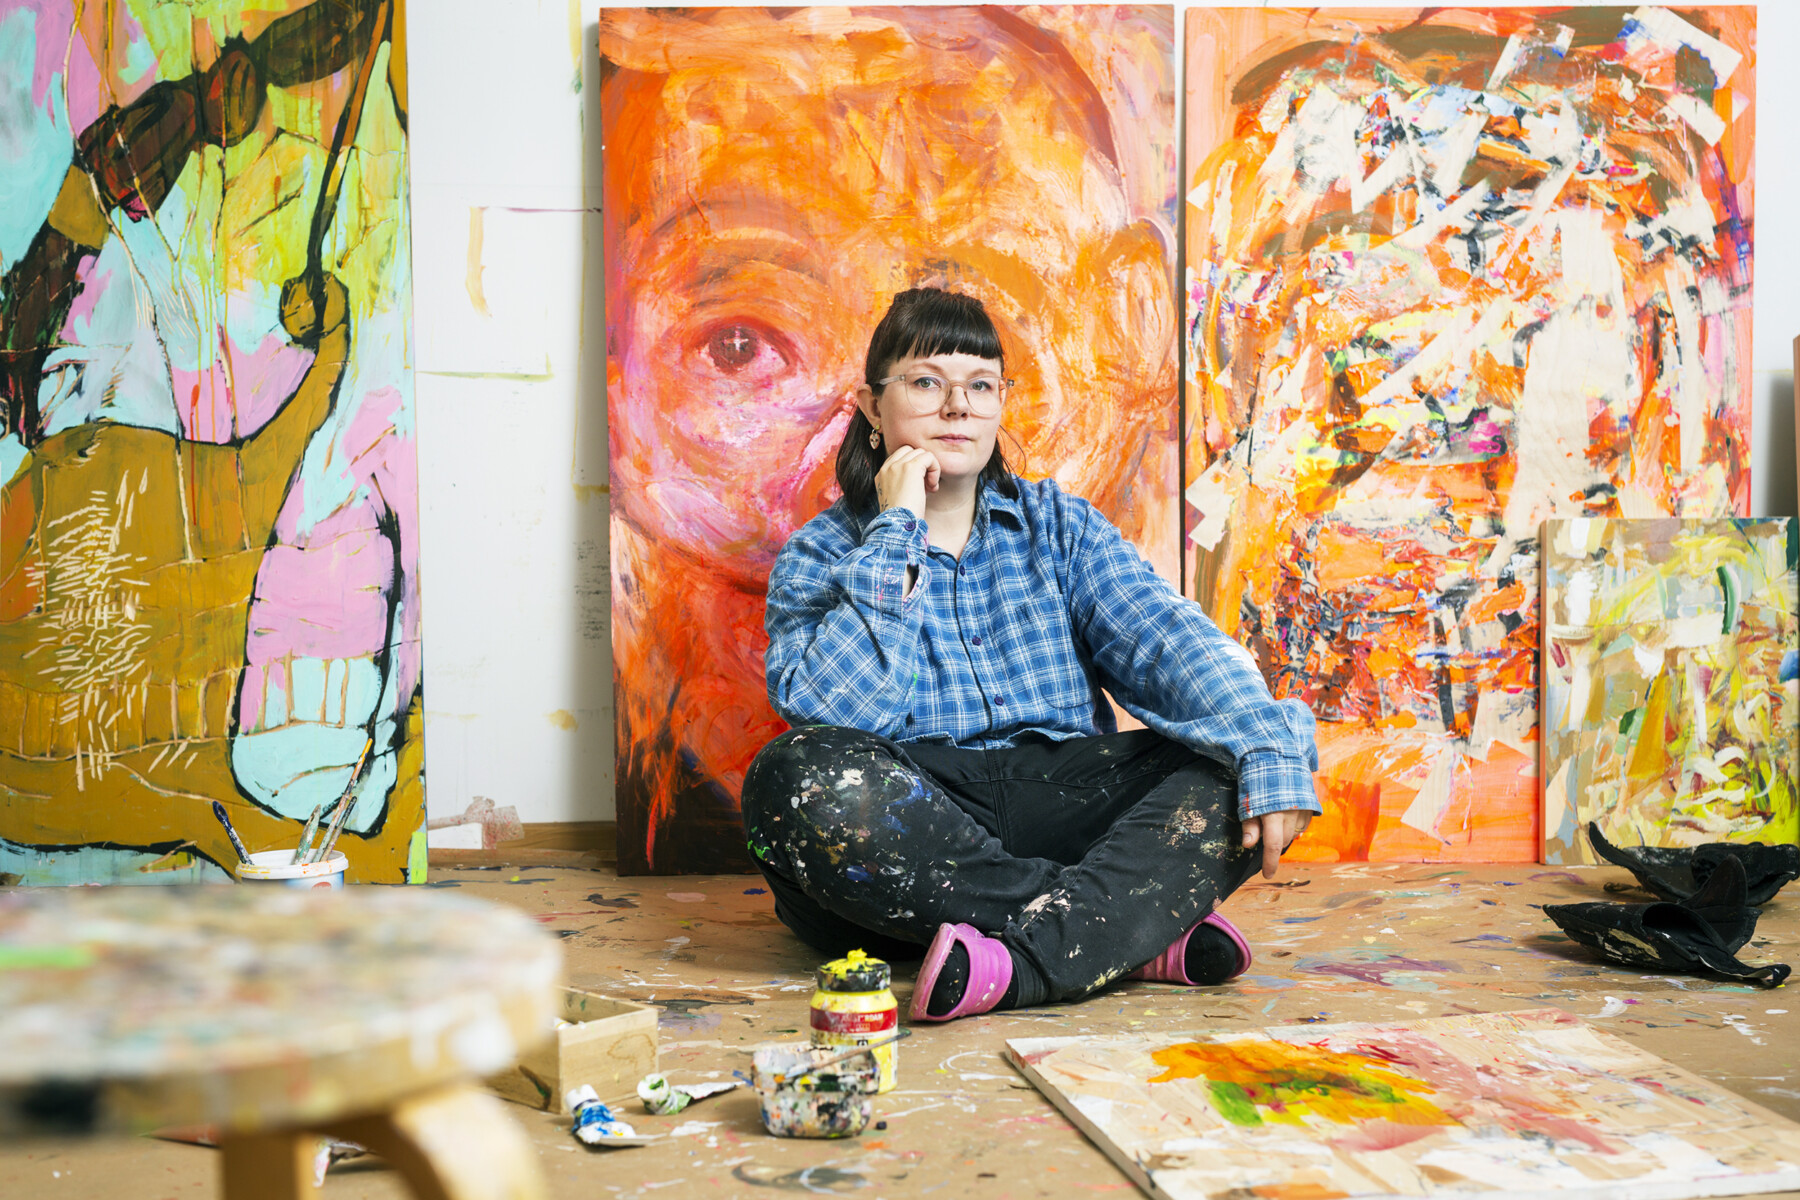 Una mujer con ropa de trabajo posa sentada en el suelo de un estudio de arte, delante de varios cuadros grandes apoyados en la pared.